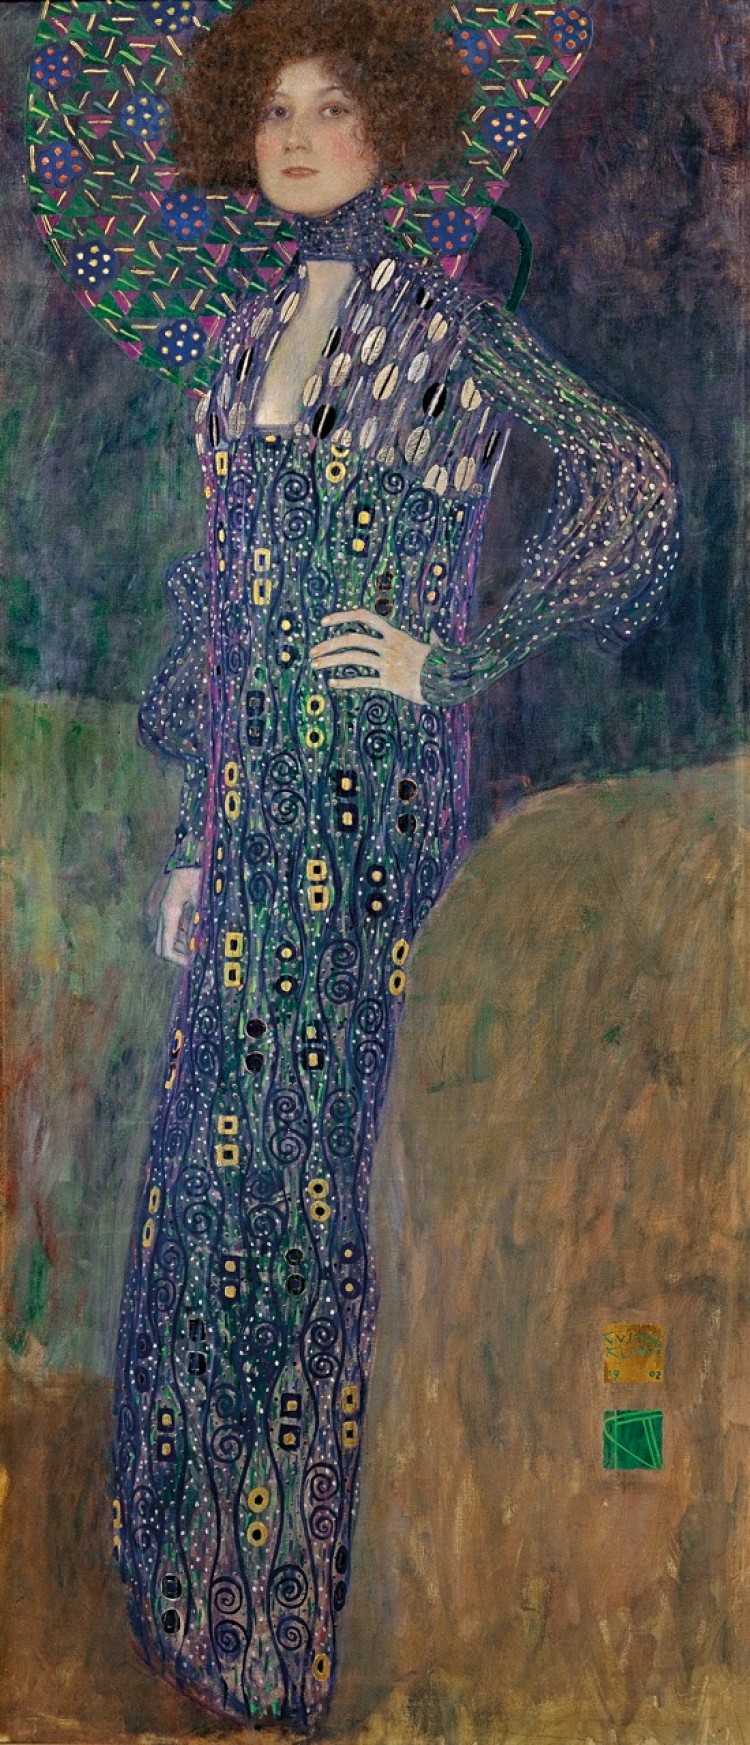 Emilie Floge, 1902, oil on canvas, Gustav Klimt (artist.) (Courtesy of Wien Museum, Vienna)